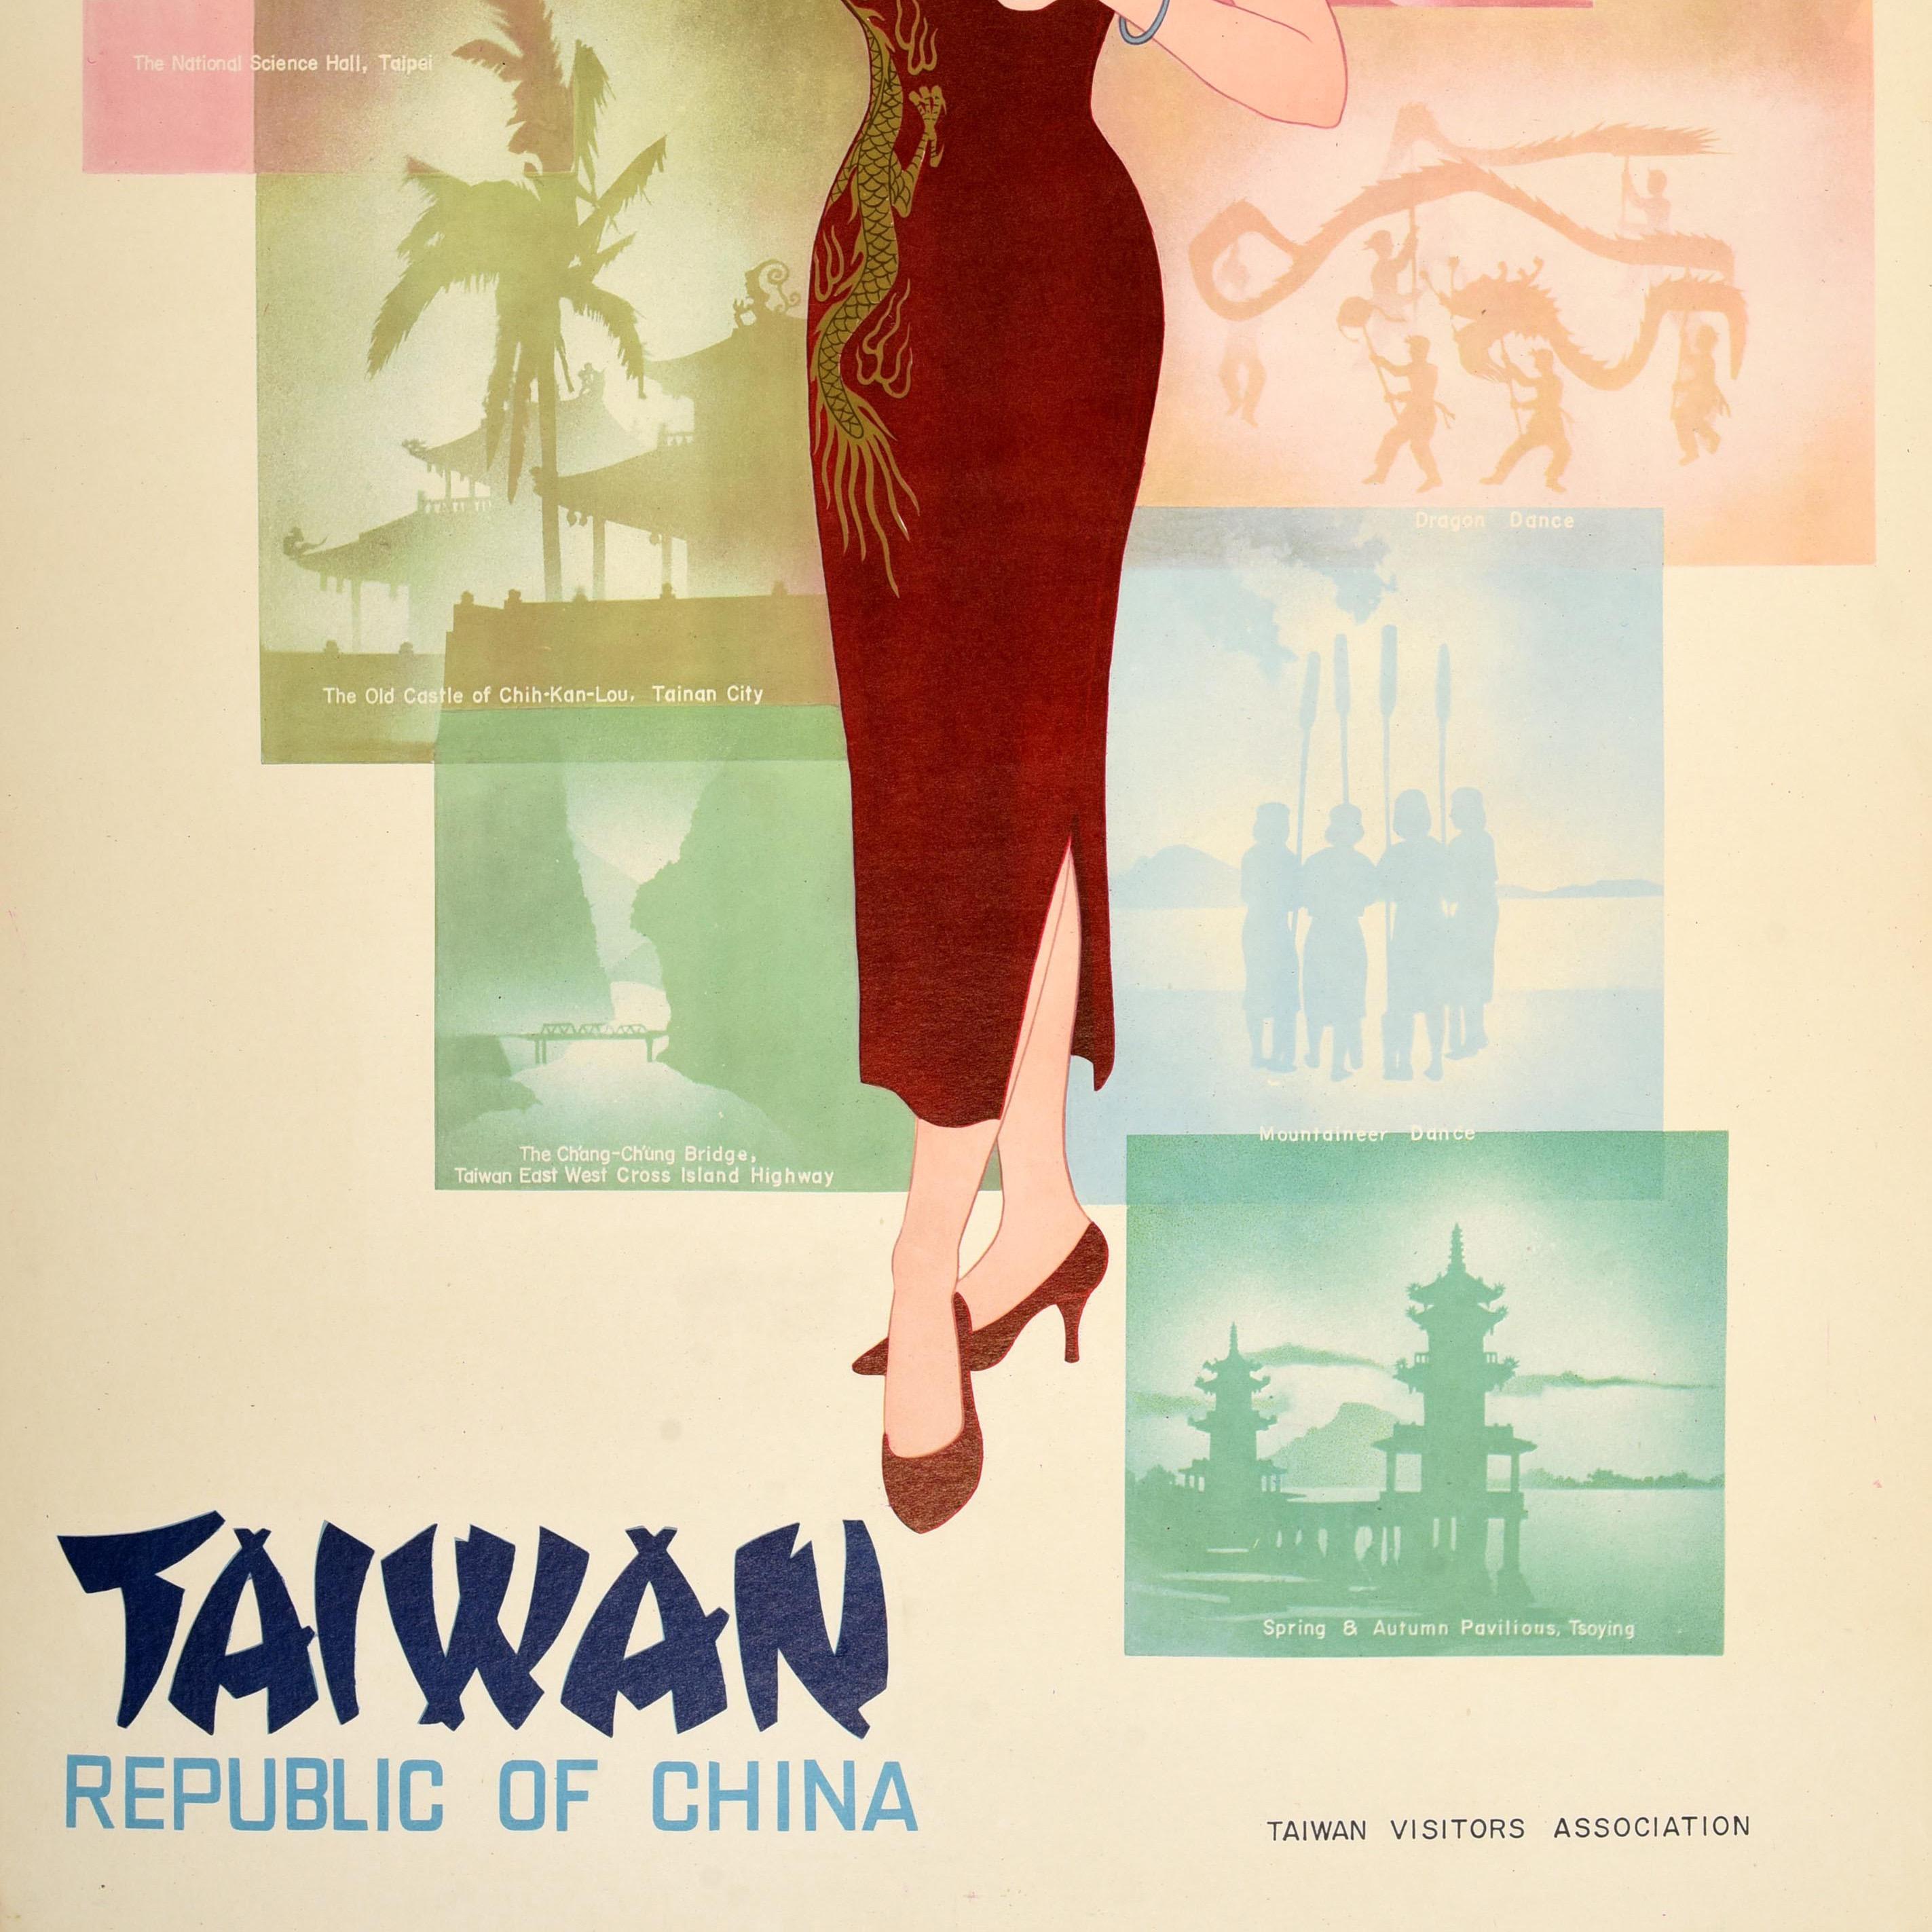 Original-Reiseplakat für Taiwan, Republik China, herausgegeben von der Taiwan Visitors Association, mit einem farbenfrohen Design, das eine Dame in einem traditionellen roten Cheongsam-Kleid mit einem Drachen an der Seite zeigt, die eine Blume in